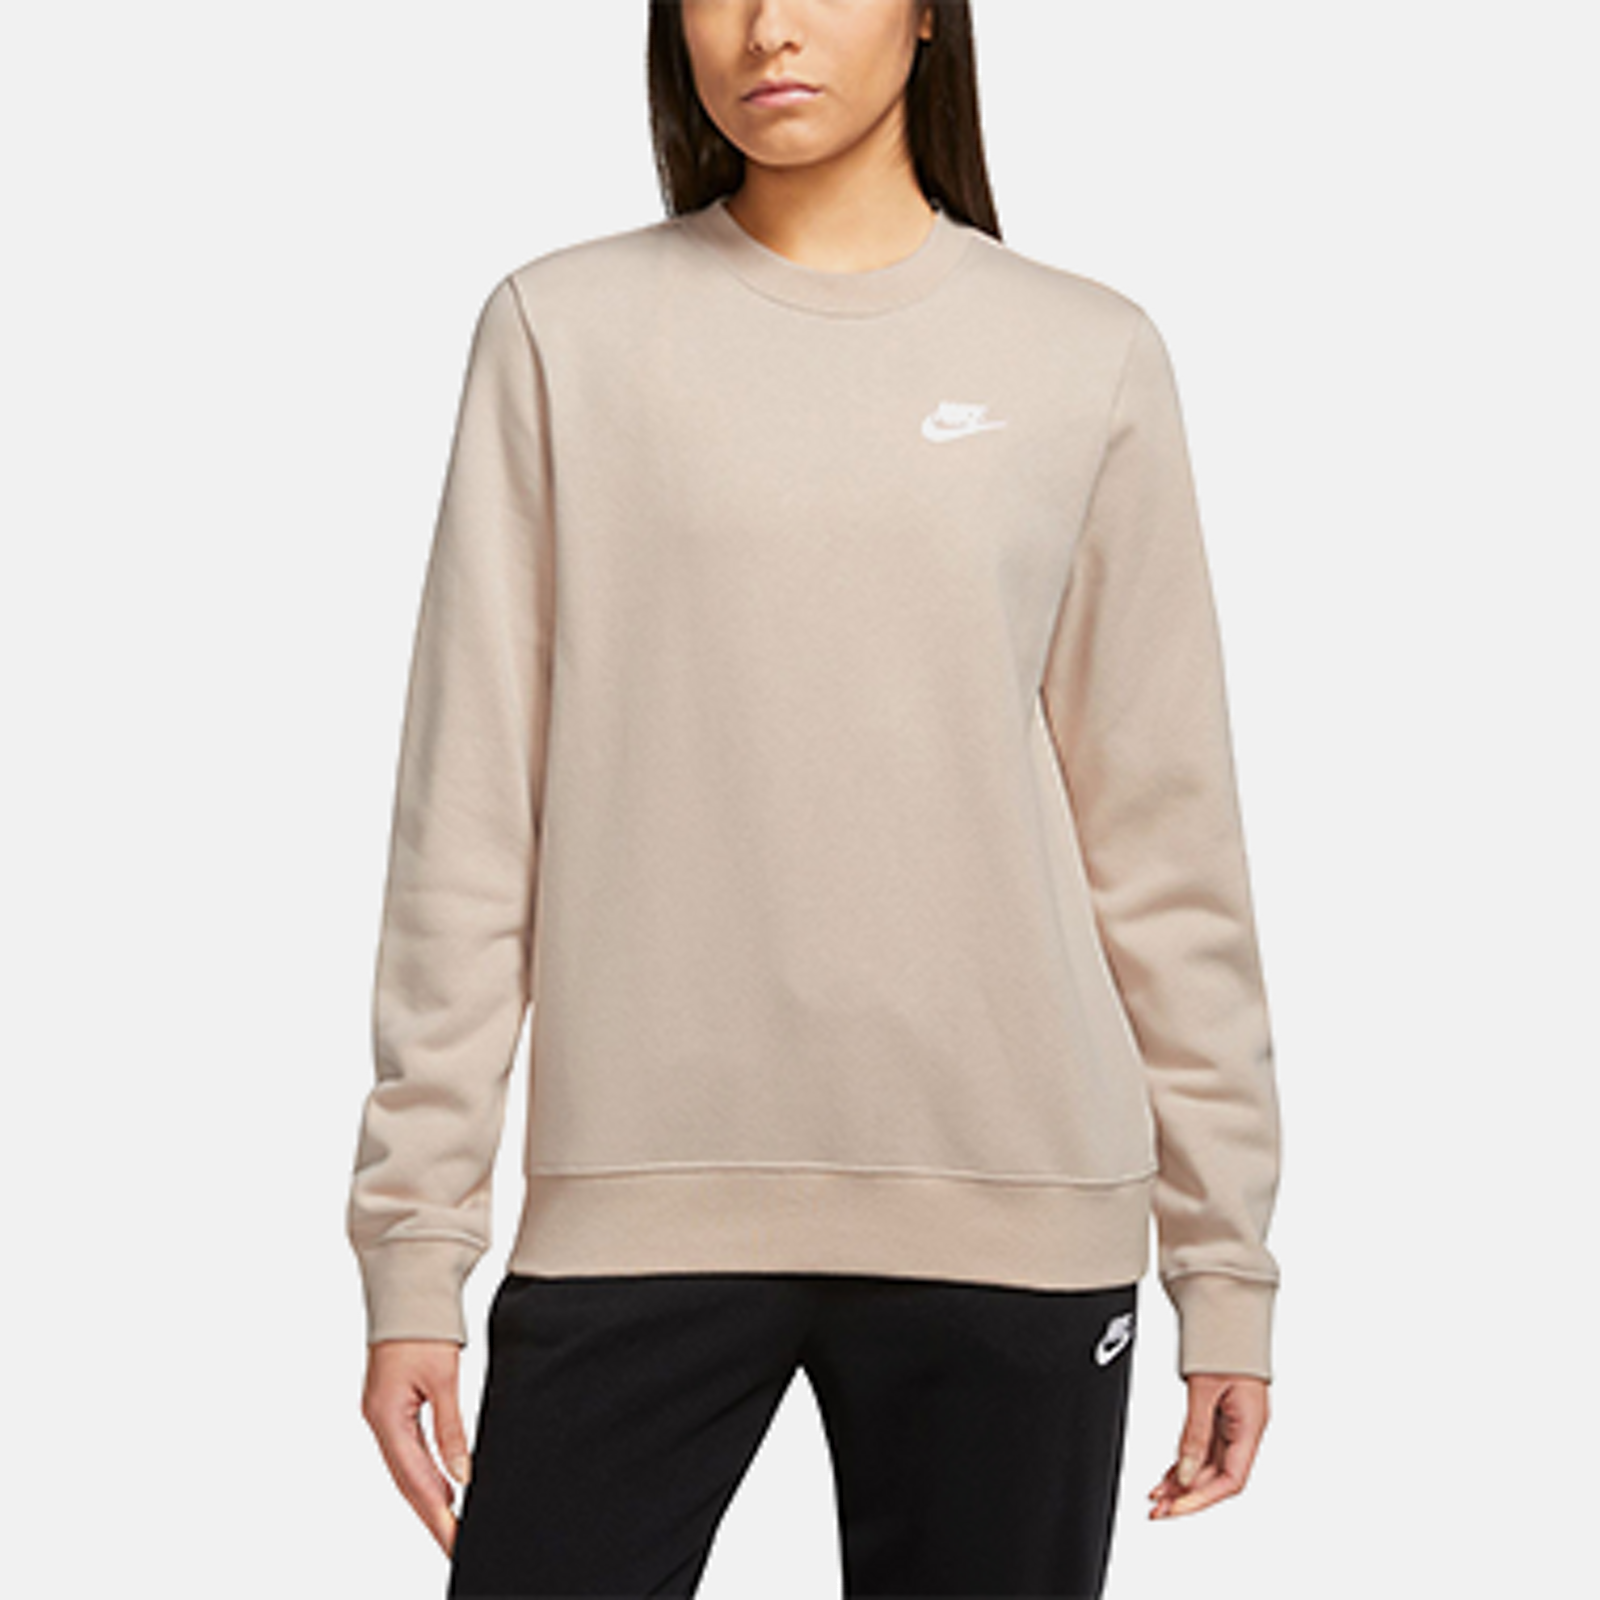 Bench DNA Women's Hoodies & Sweatshirts - Macy's